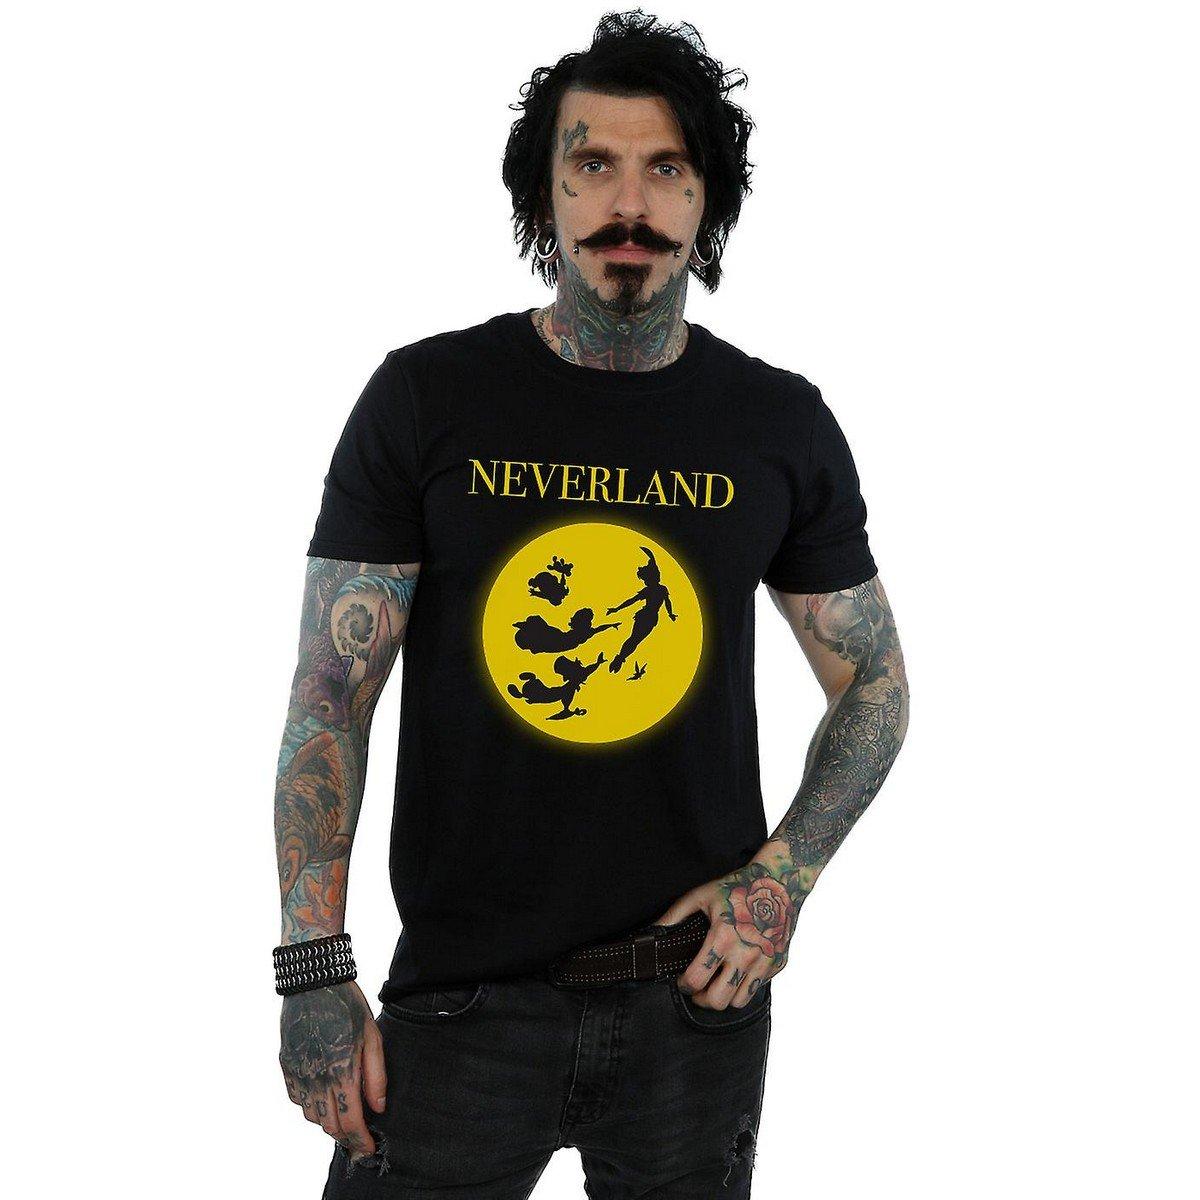 Neverland Tshirt Herren Schwarz L von Peter Pan